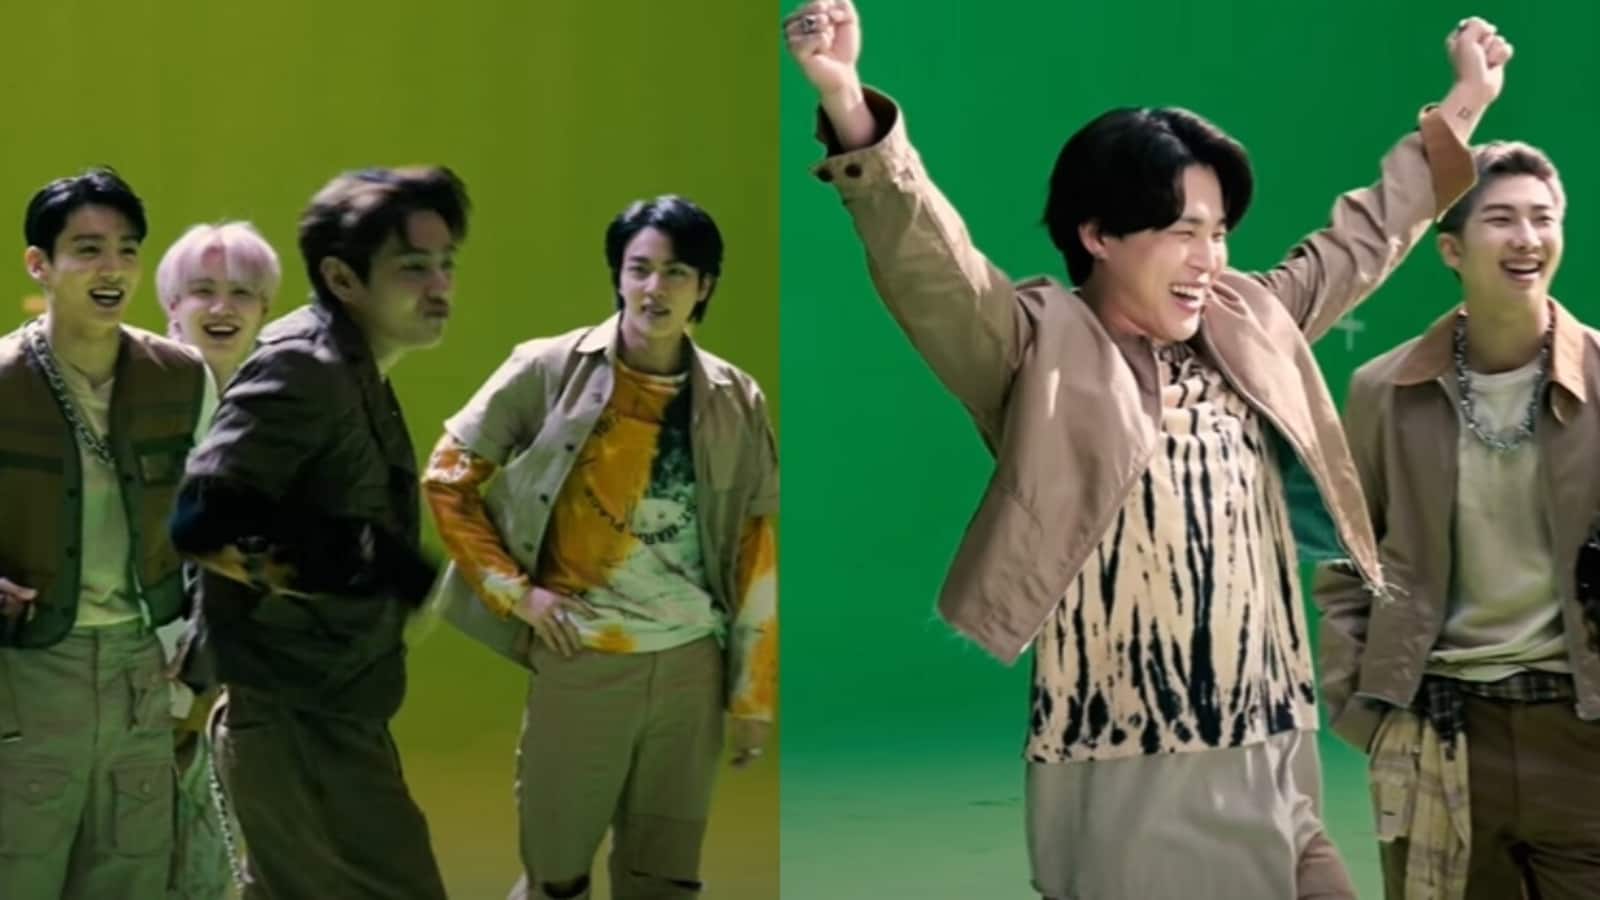 방탄소년단: RM-진이 웃음을 나누고, 뷔와 지민이 마이 유니버스 영상 촬영 중 멤버들을 헤어지게 한다.  손목 시계